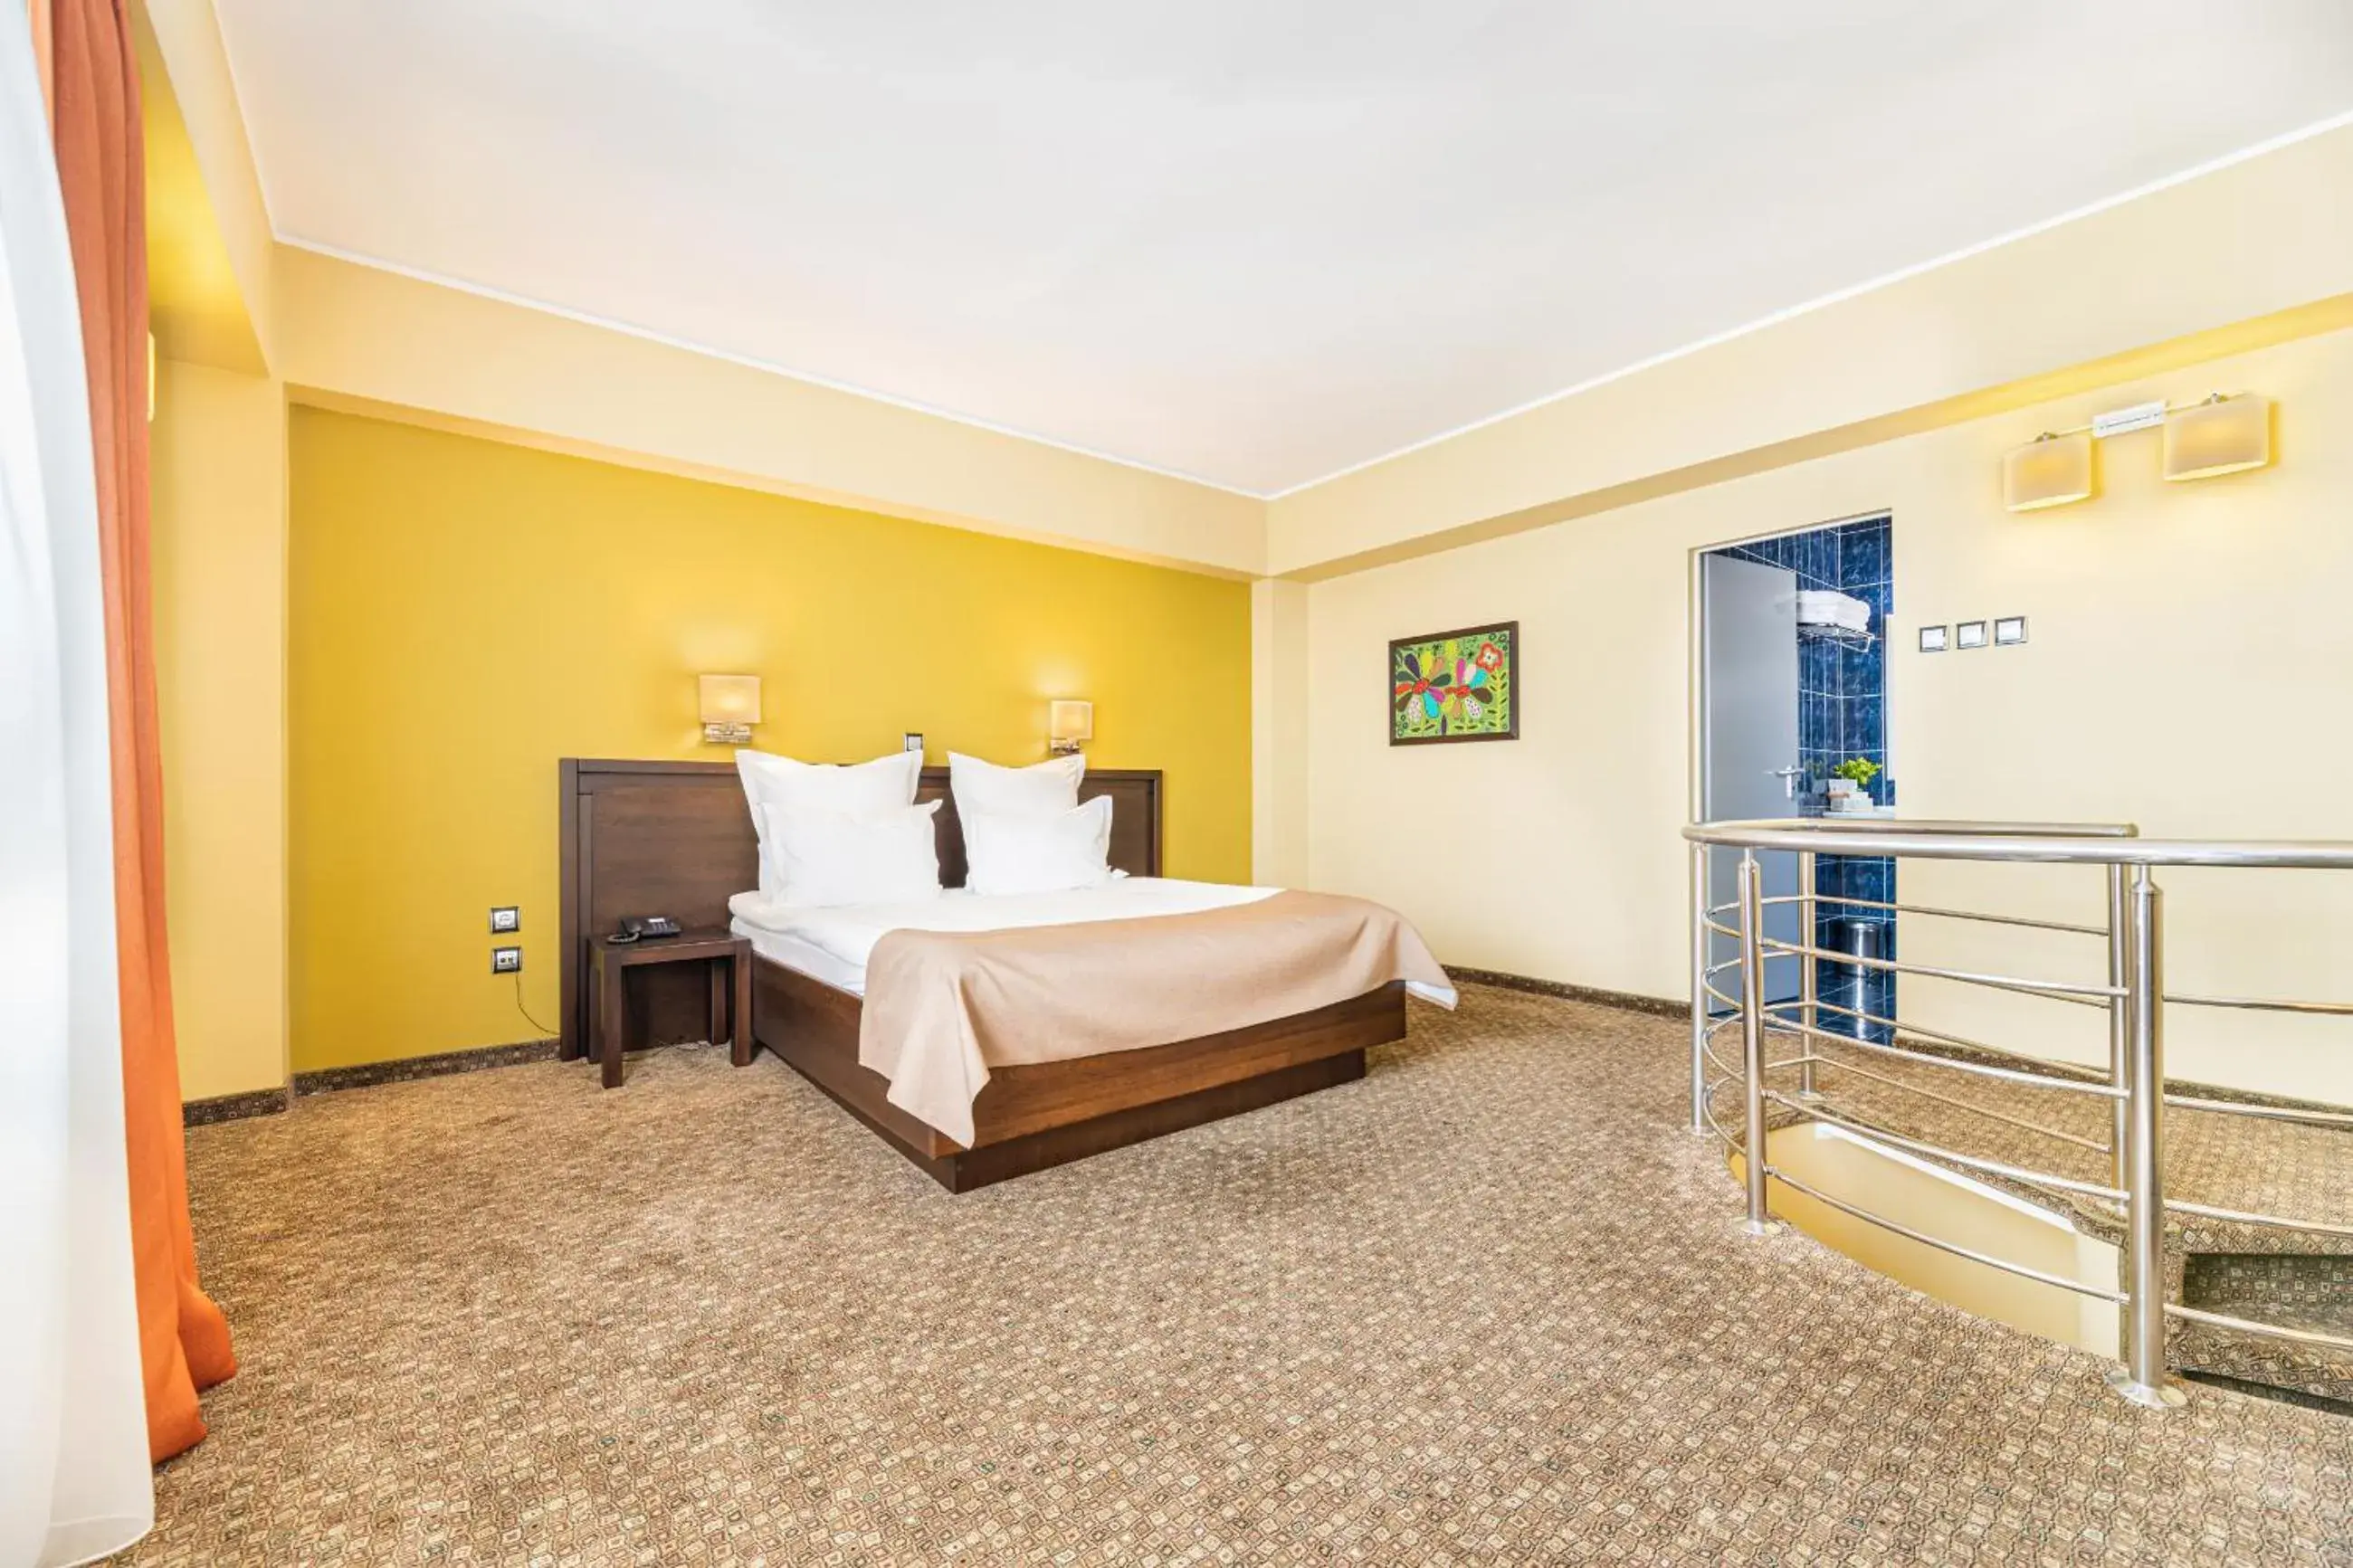 Bedroom, Room Photo in Vega Hotel